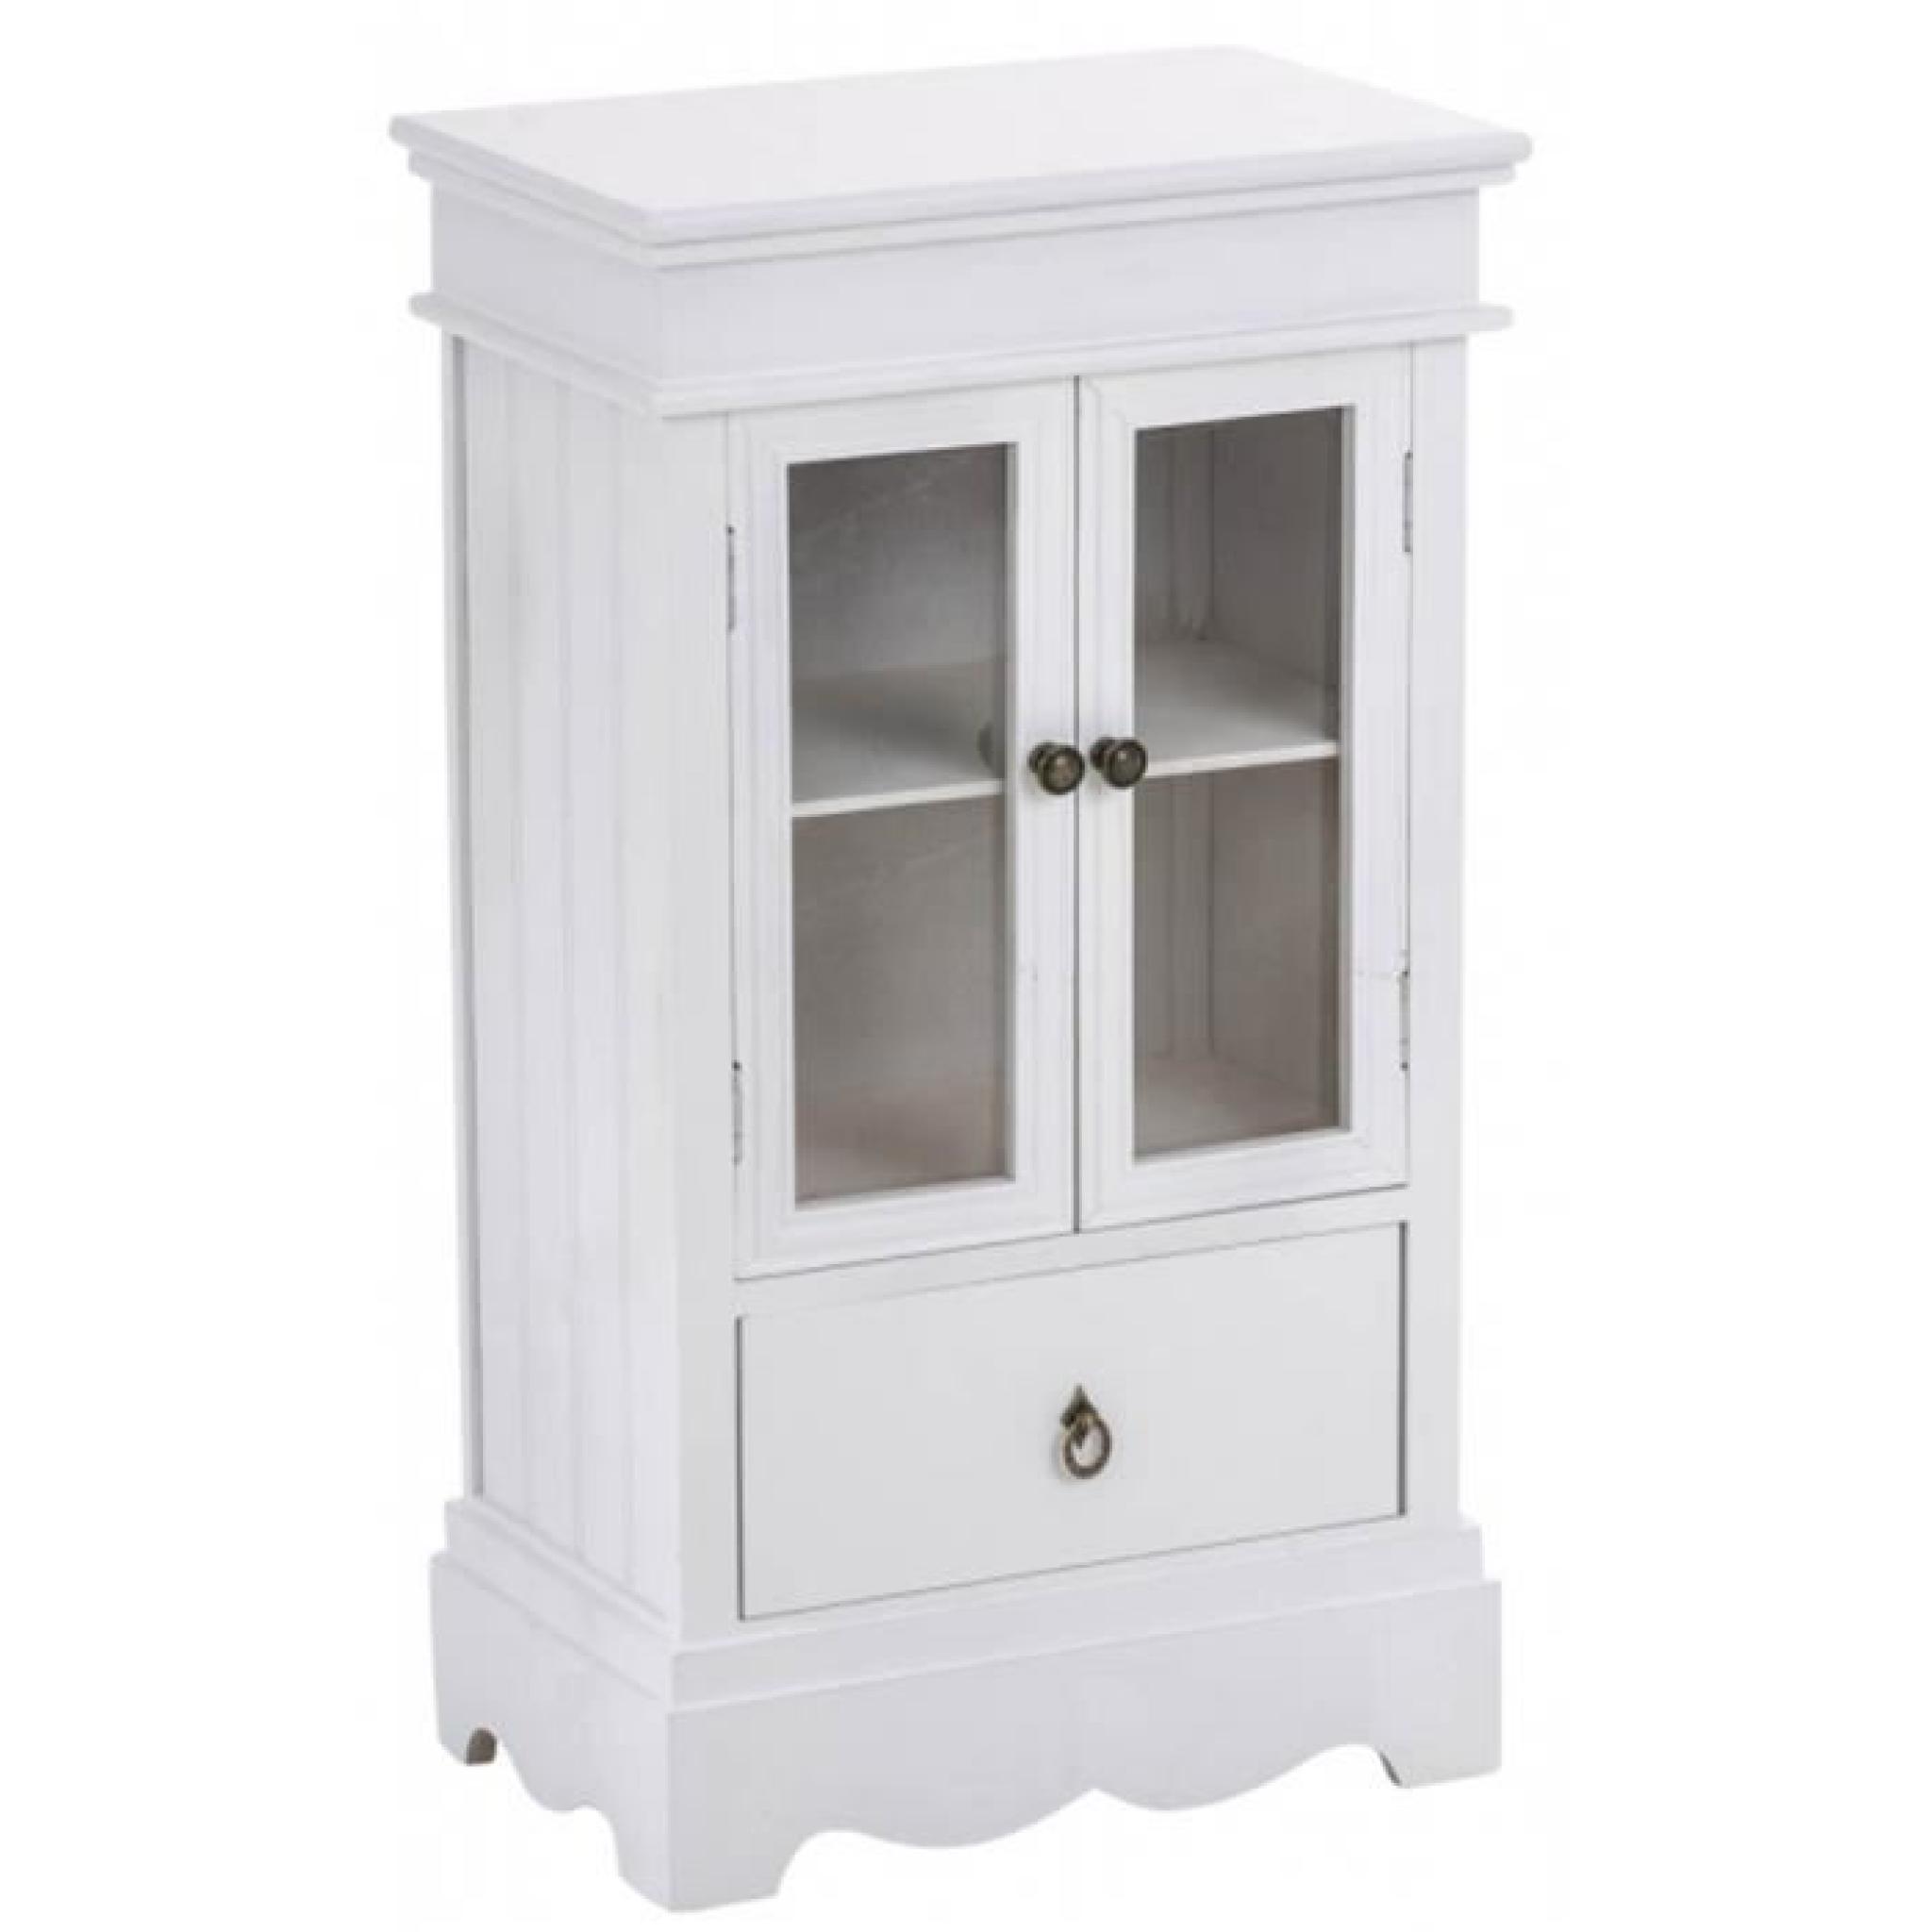 Commode en bois coloris blanc avec un tiroir et 2 portes en verre à 2 étagères - Dim : H 80 x L 45 x P 27 cm